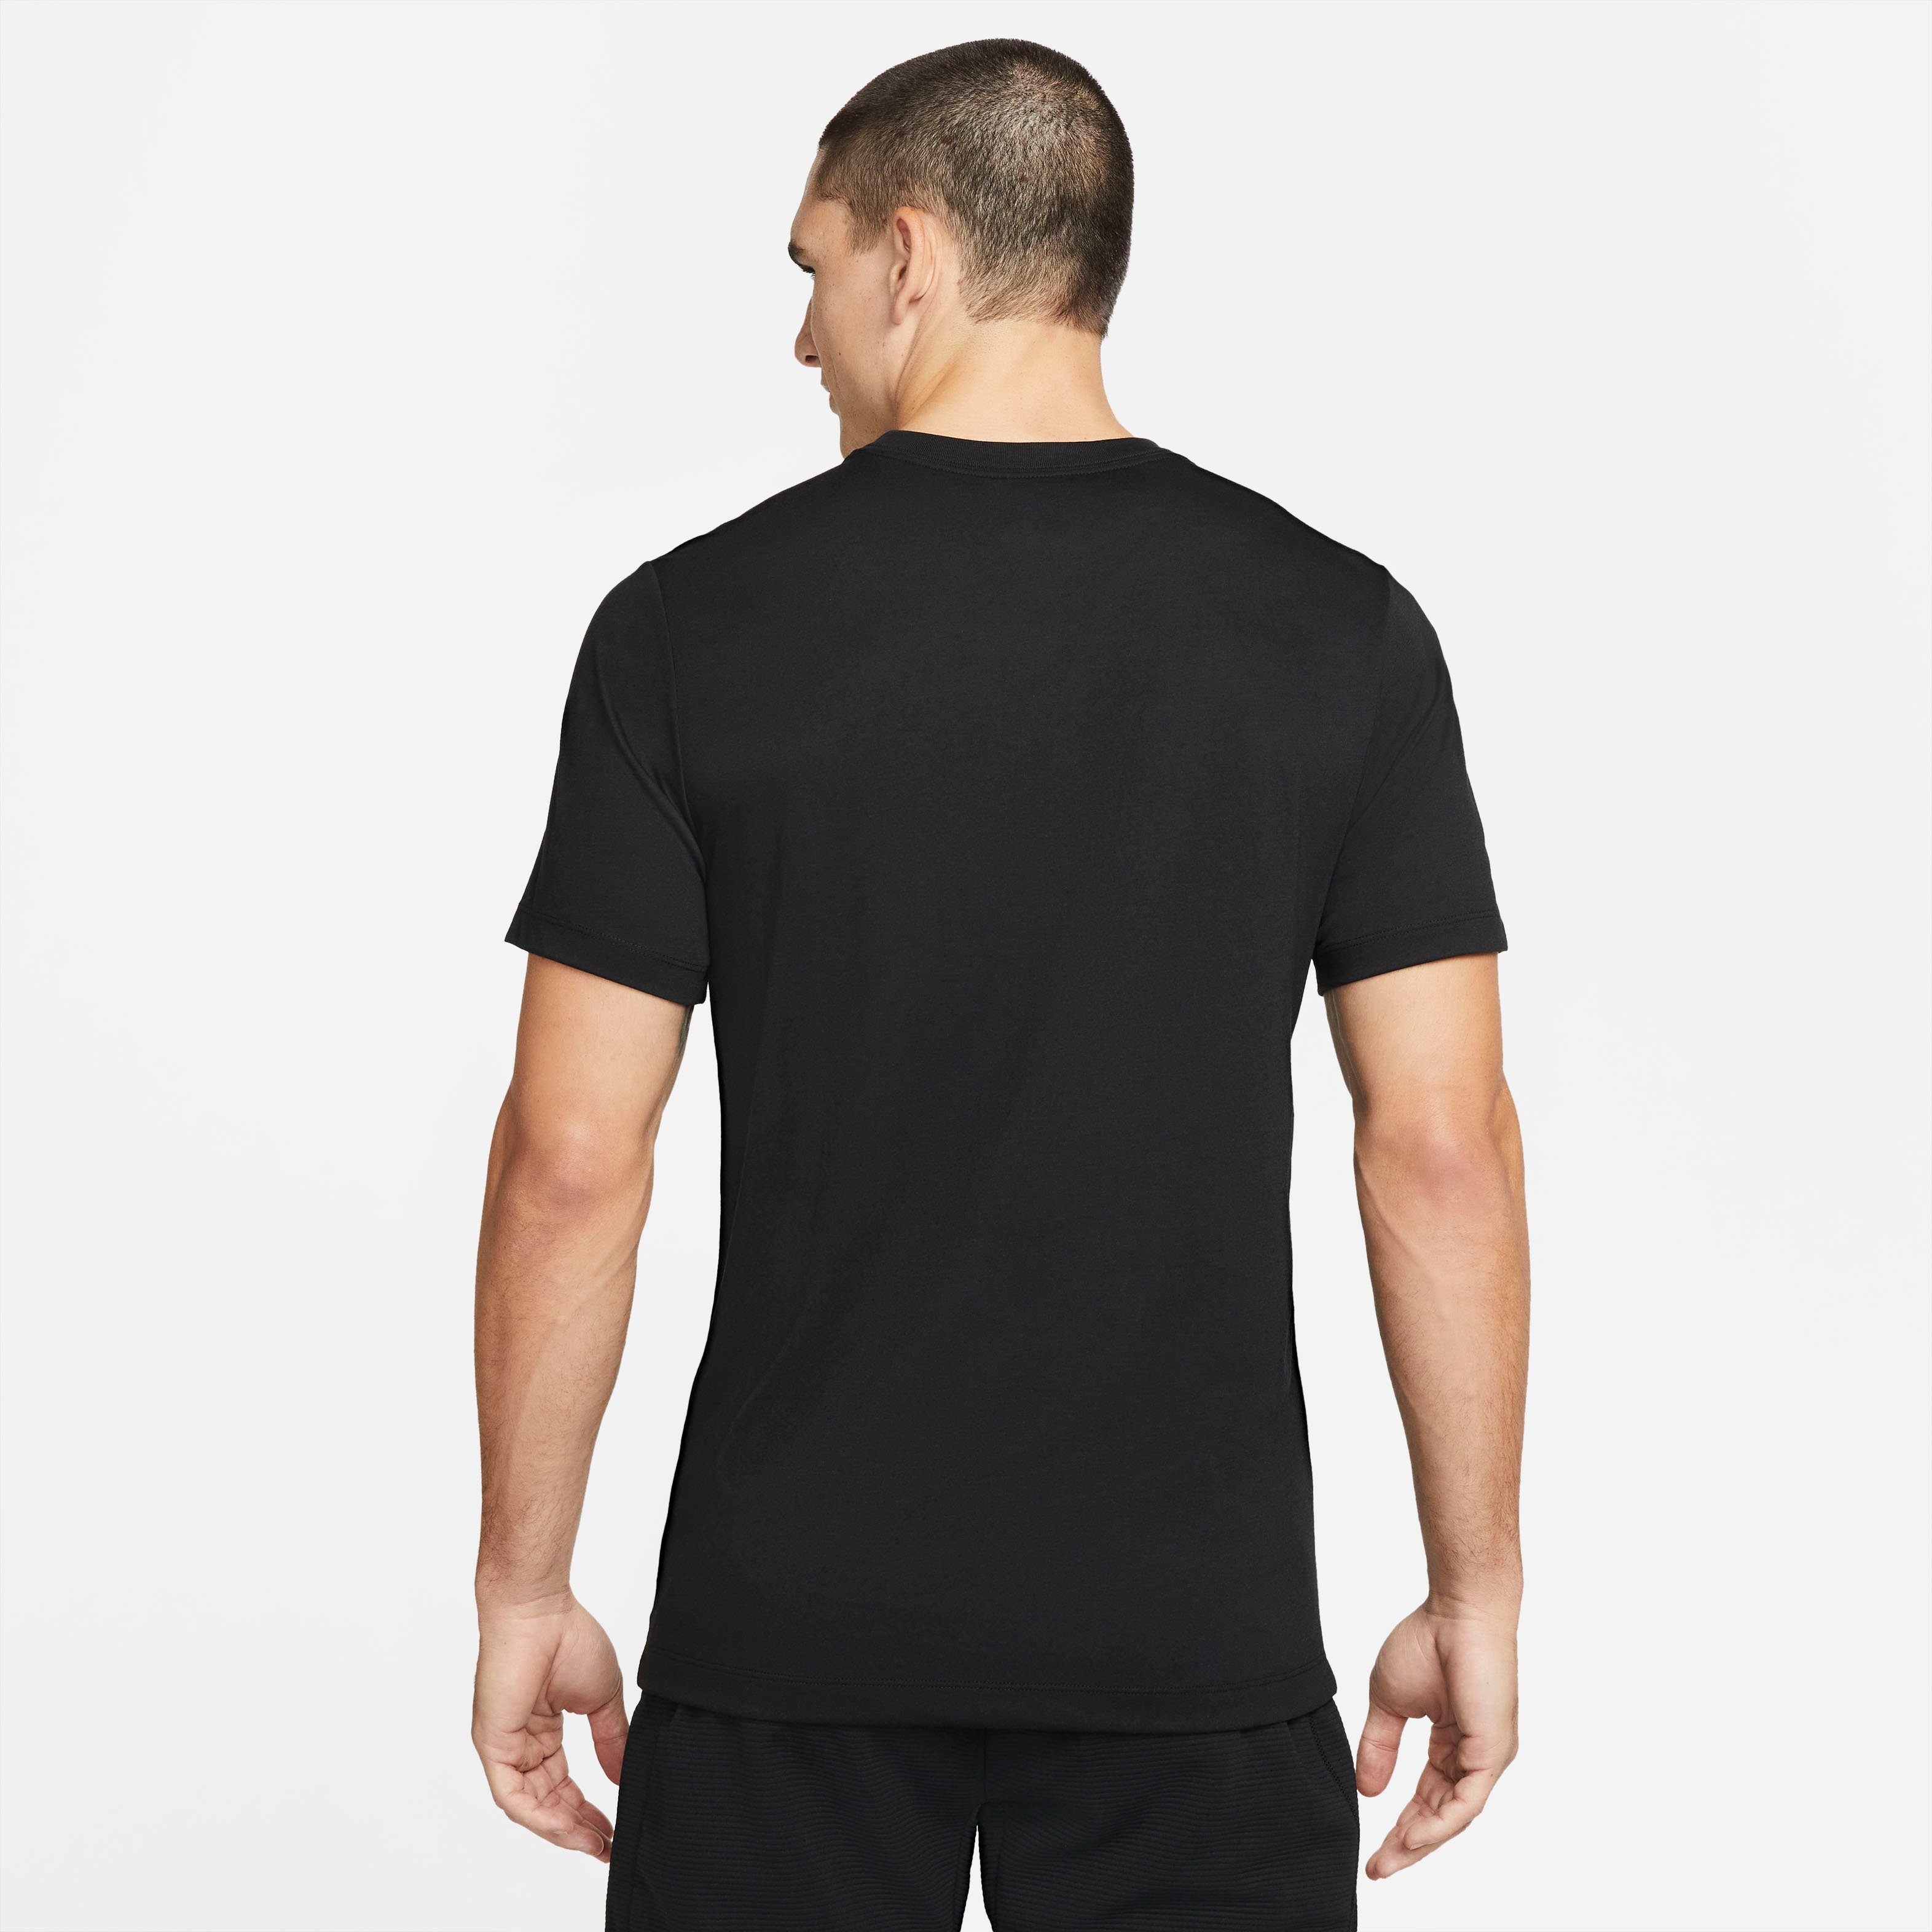 Pro Trainingsshirt Men's T-Shirt Dri-FIT Training BLACK Nike